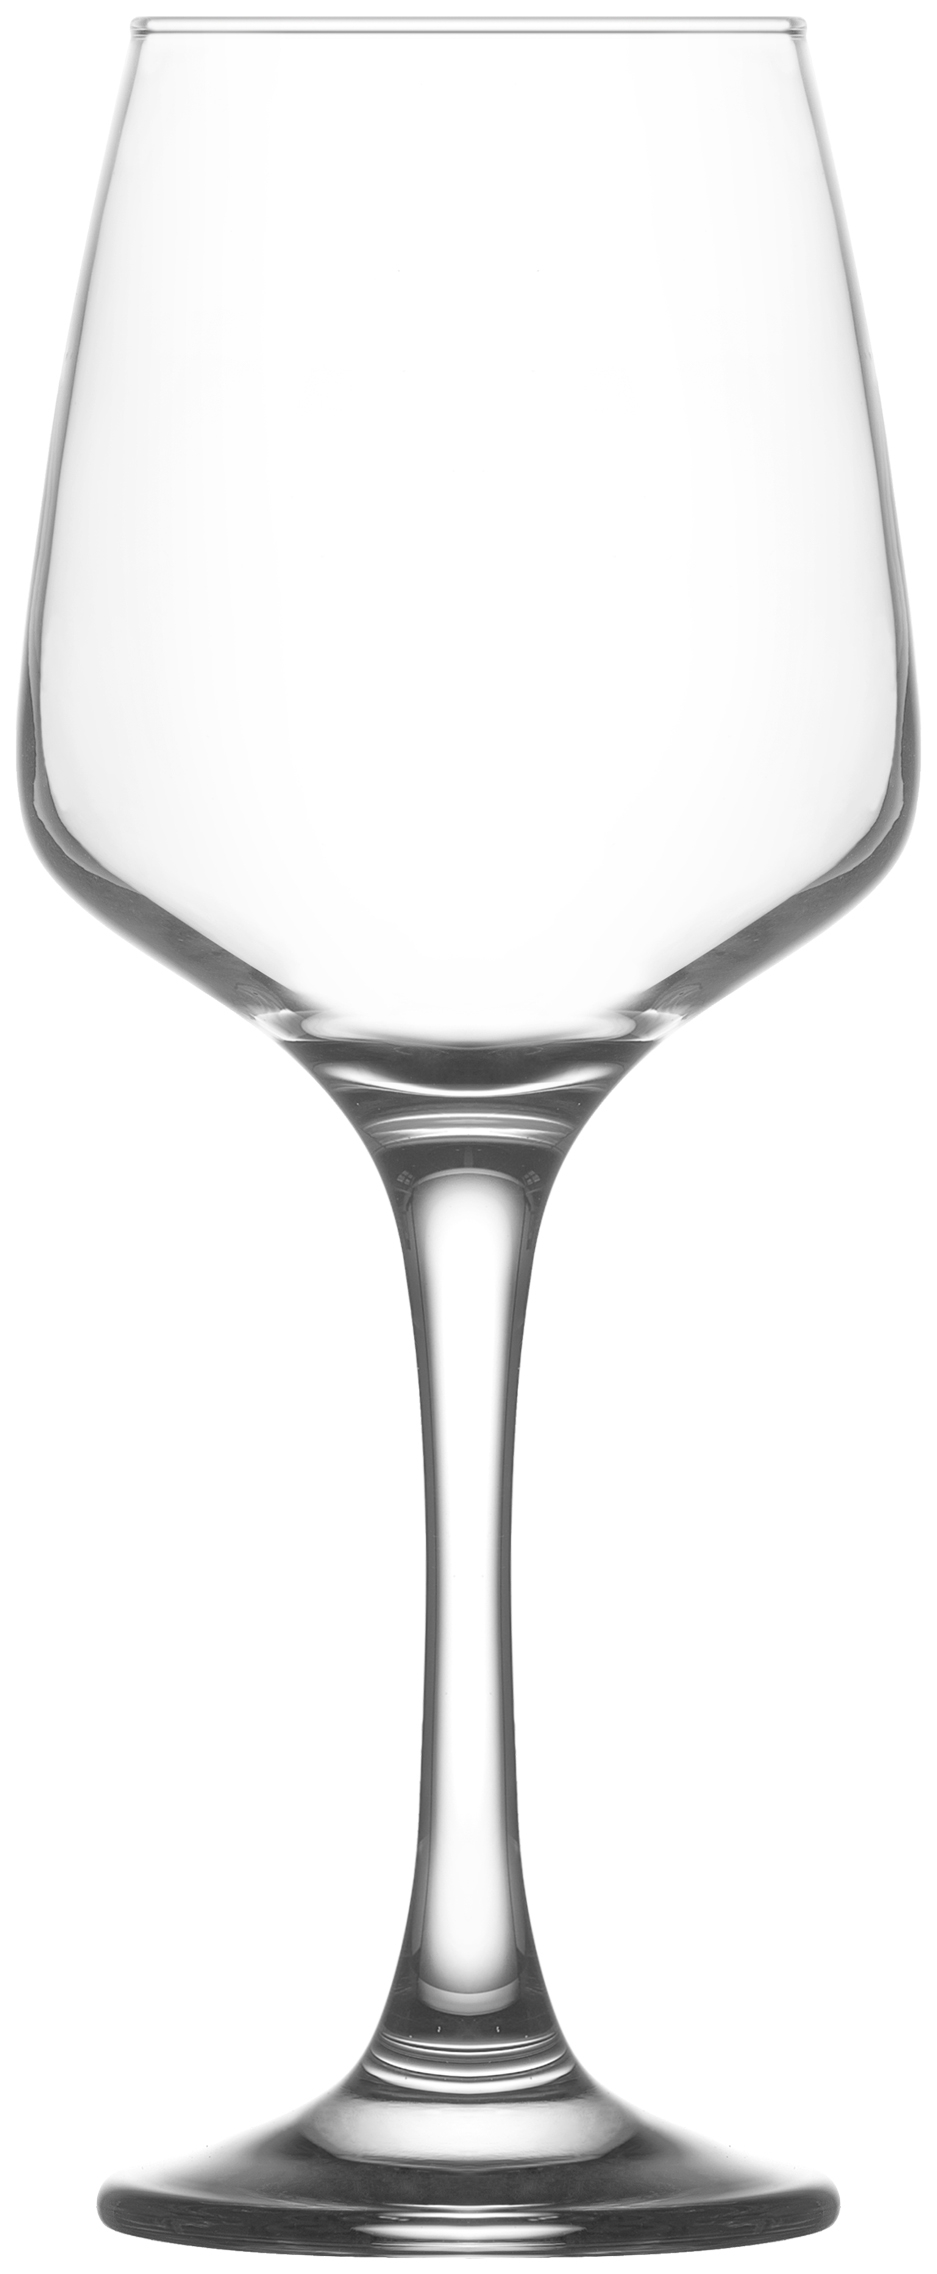 Ποτήρι Κρασιού Σετ 6τμχ Γυάλινο LAV 295ml LVLAL55830F (Υλικό: Γυαλί, Χρώμα: Διάφανο , Μέγεθος: Κολωνάτο) - LAV - LVLAL55830F 178878